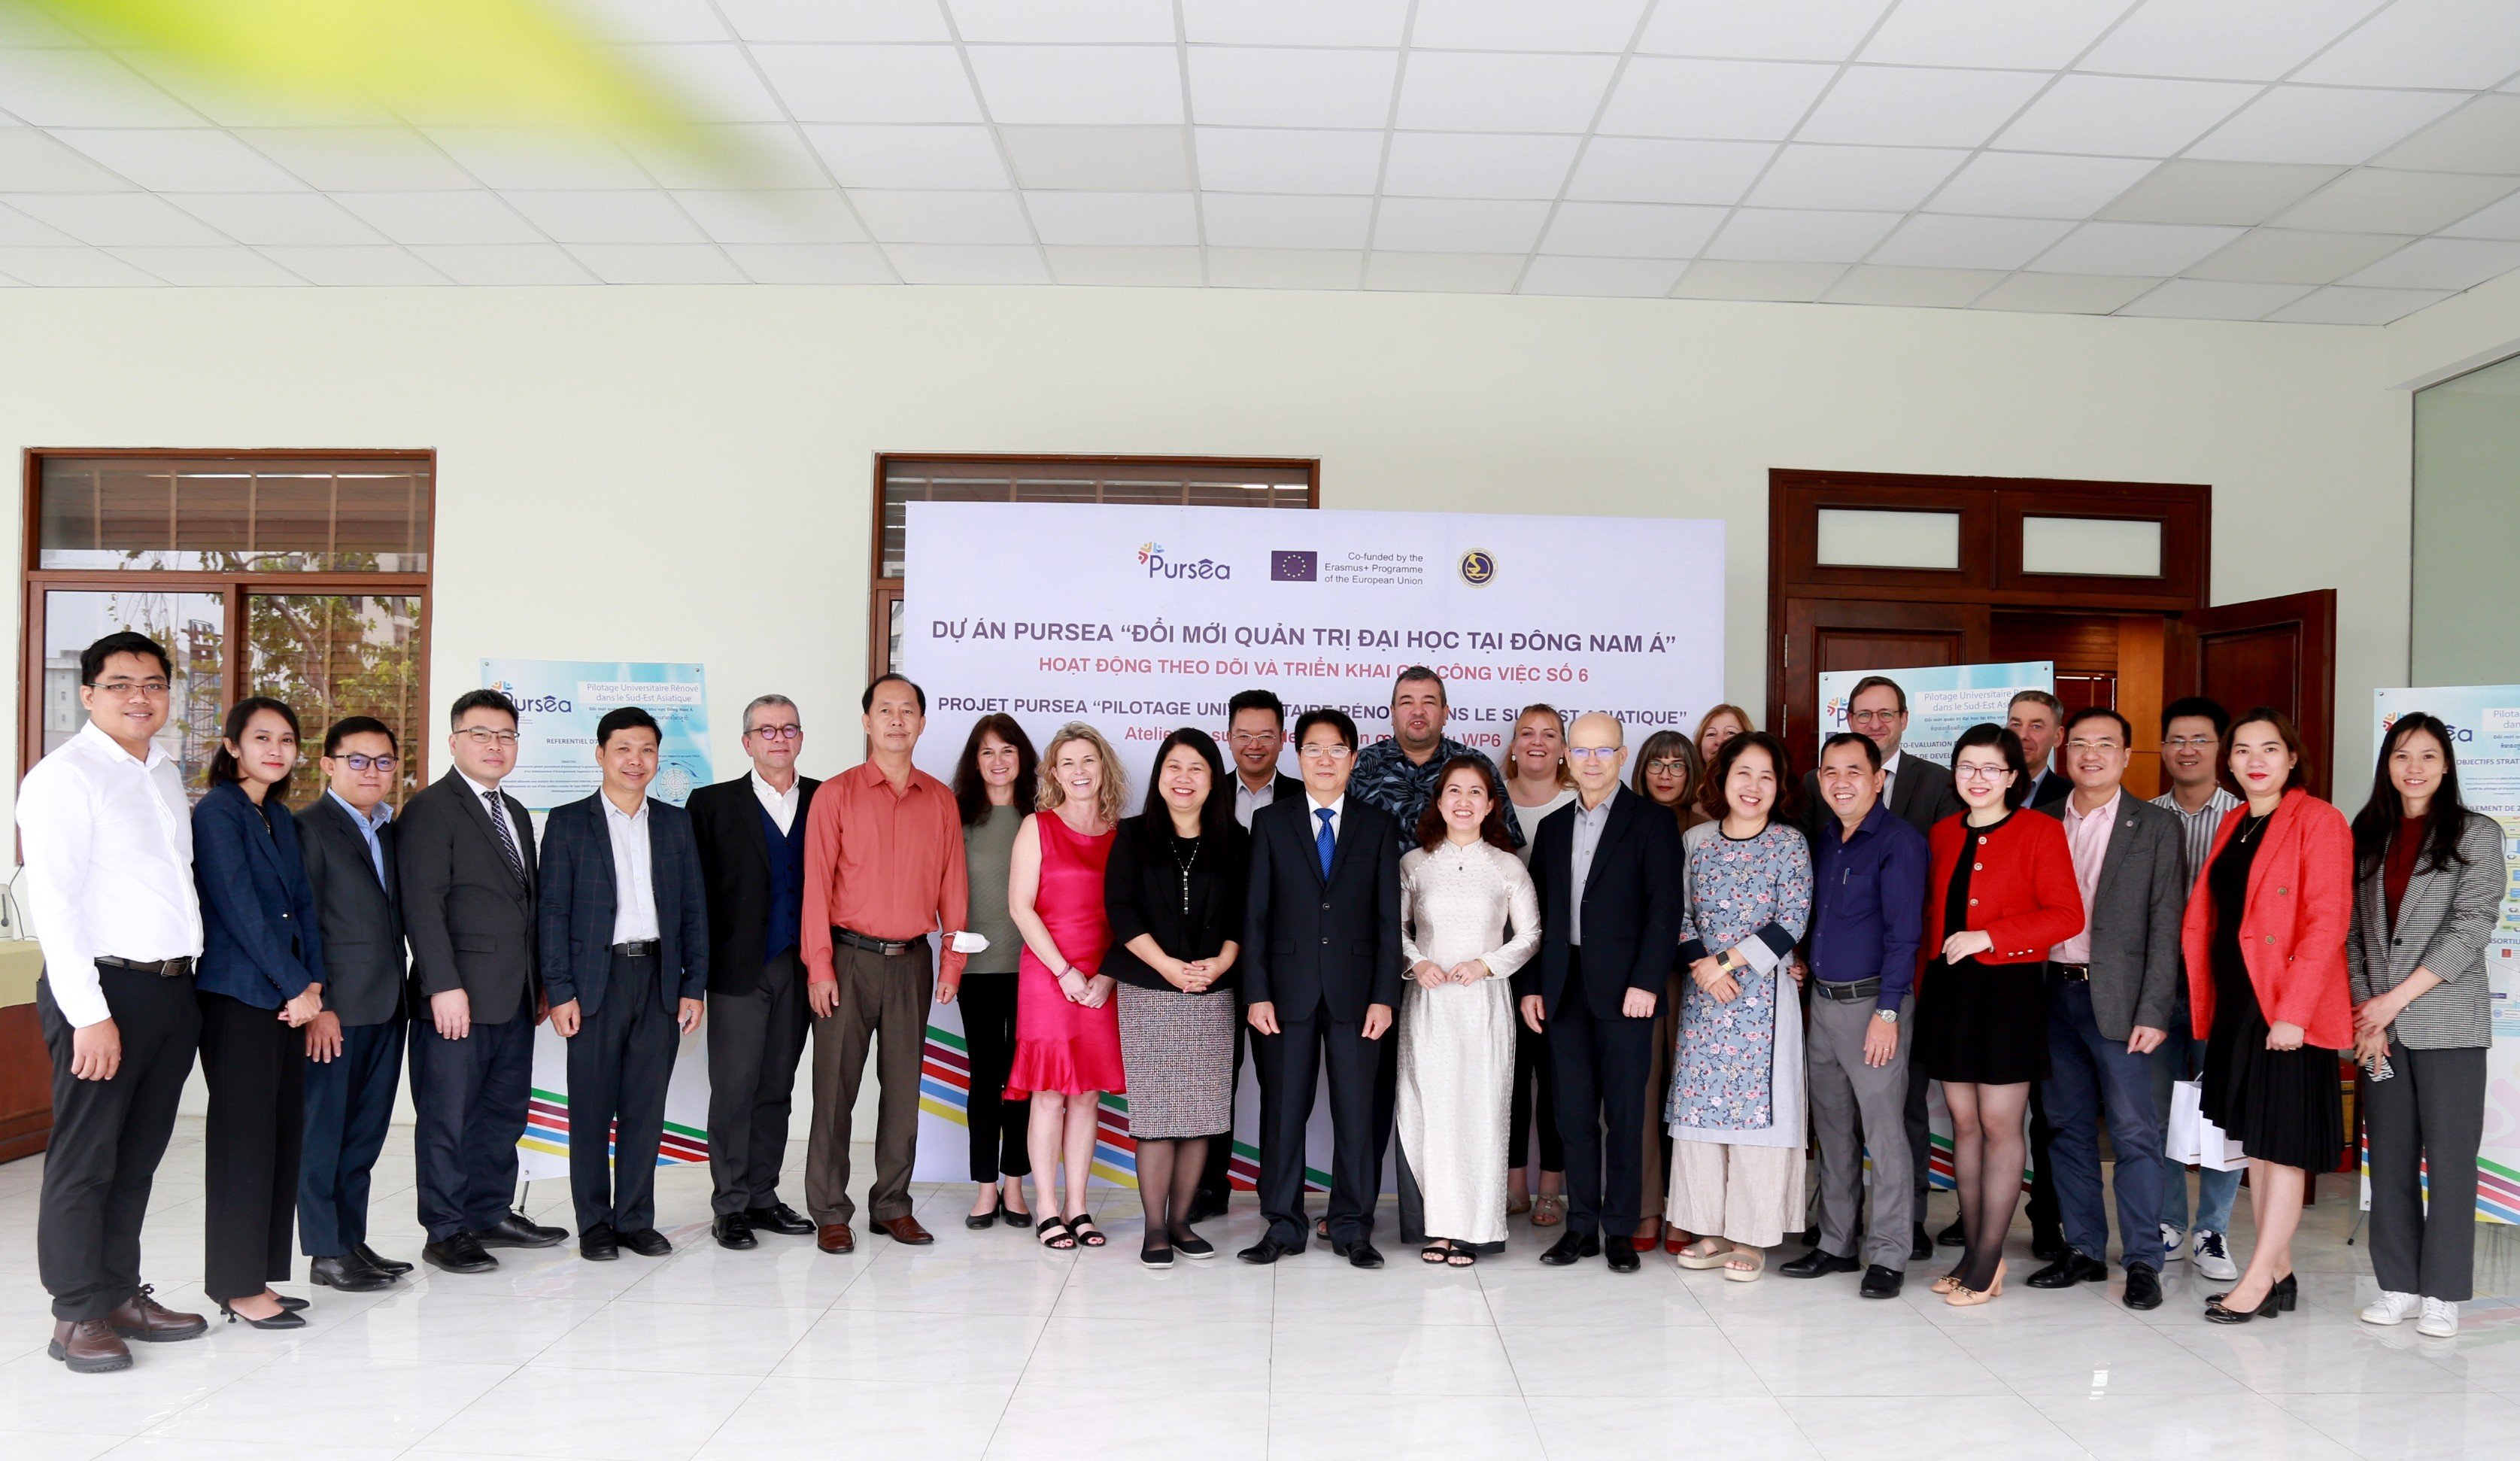 tài xỉu
 tổ chức thành công cuộc họp đánh giá tiến độ dự án Đổi mới Quản trị đại học tại Đông Nam Á